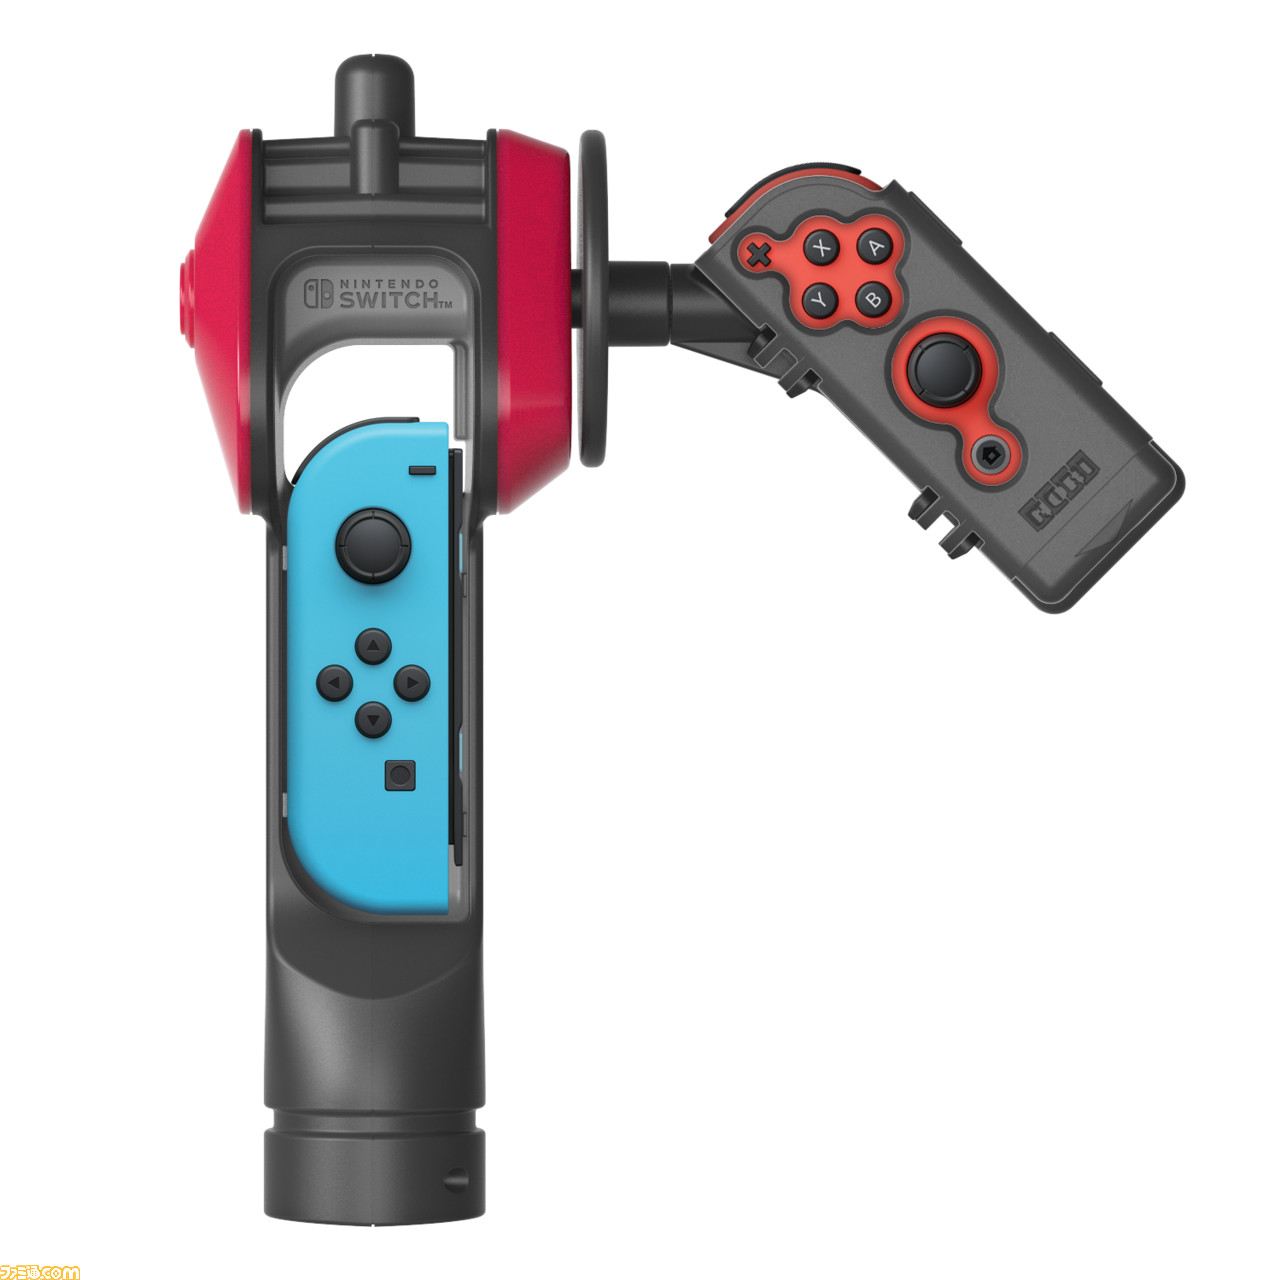 釣りスピリッツ Nintendo Switchバージョン同梱版 Switch